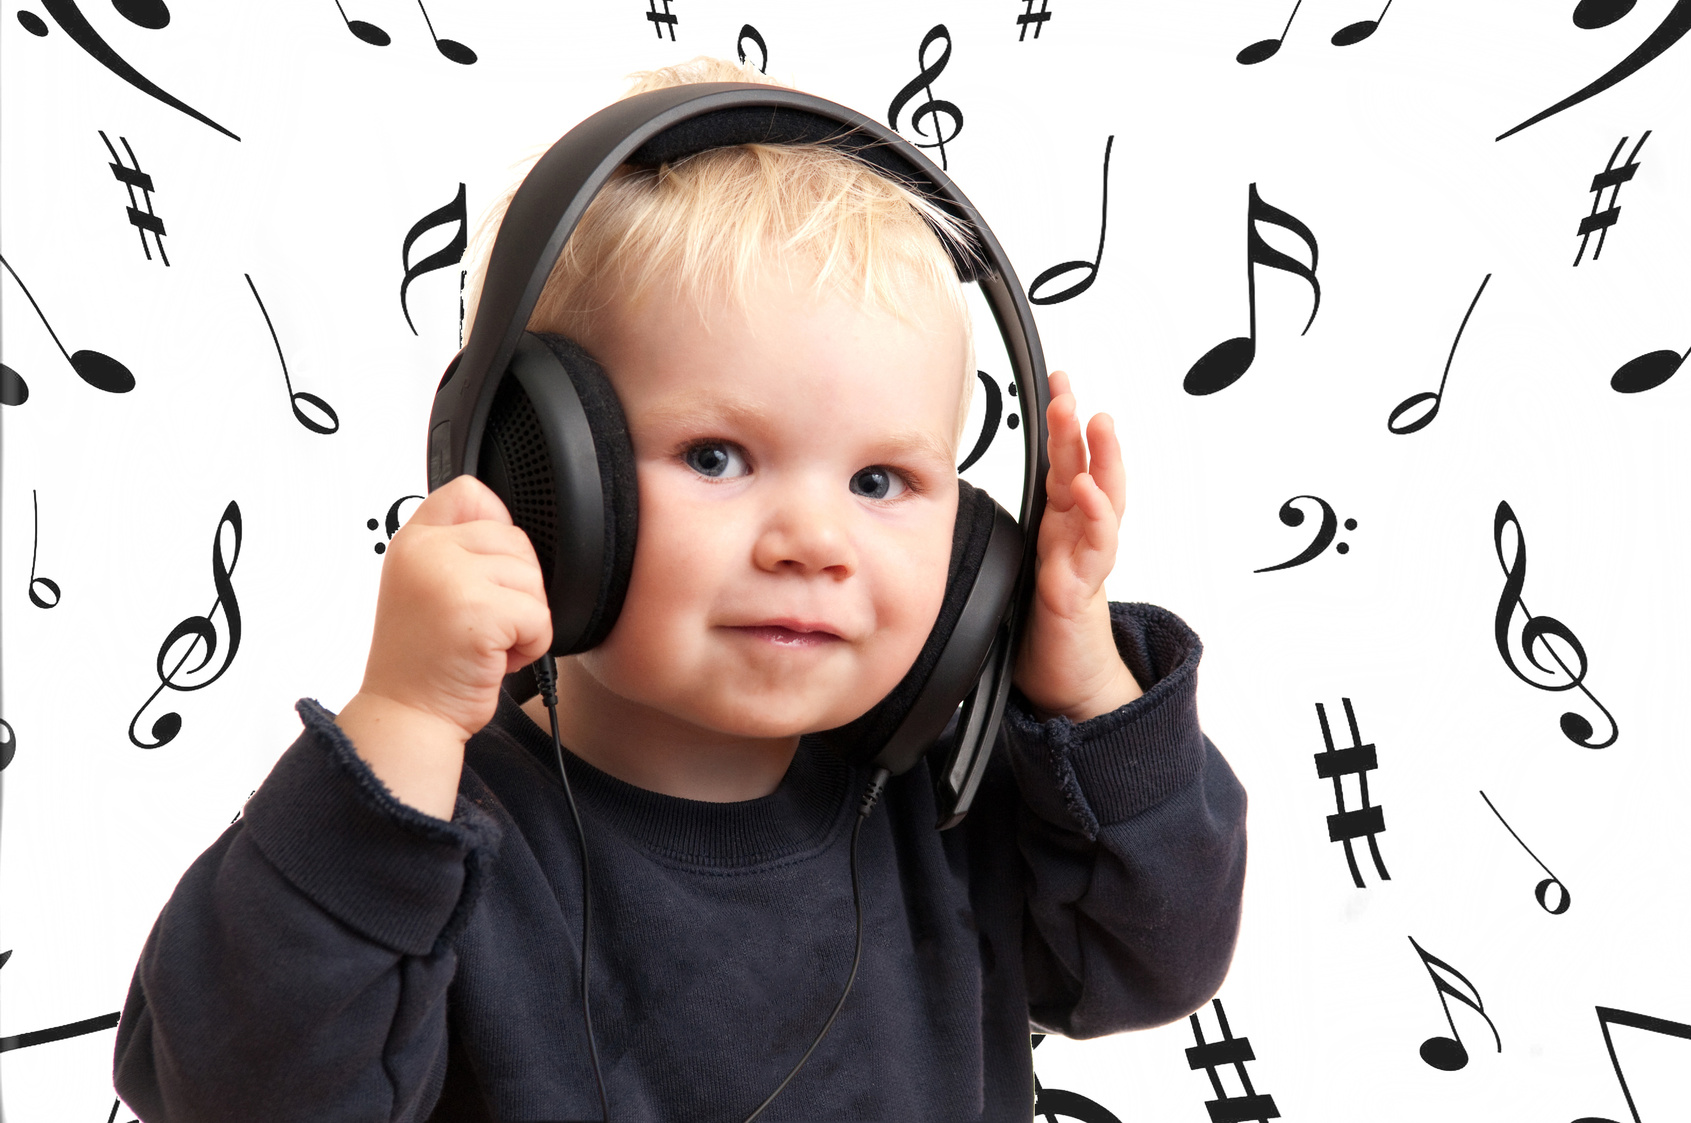 Слушание музыки тест. Ребенок в наушниках. Ребенок с наушниками. Слушание музыки. Музыкальное восприятие детей.